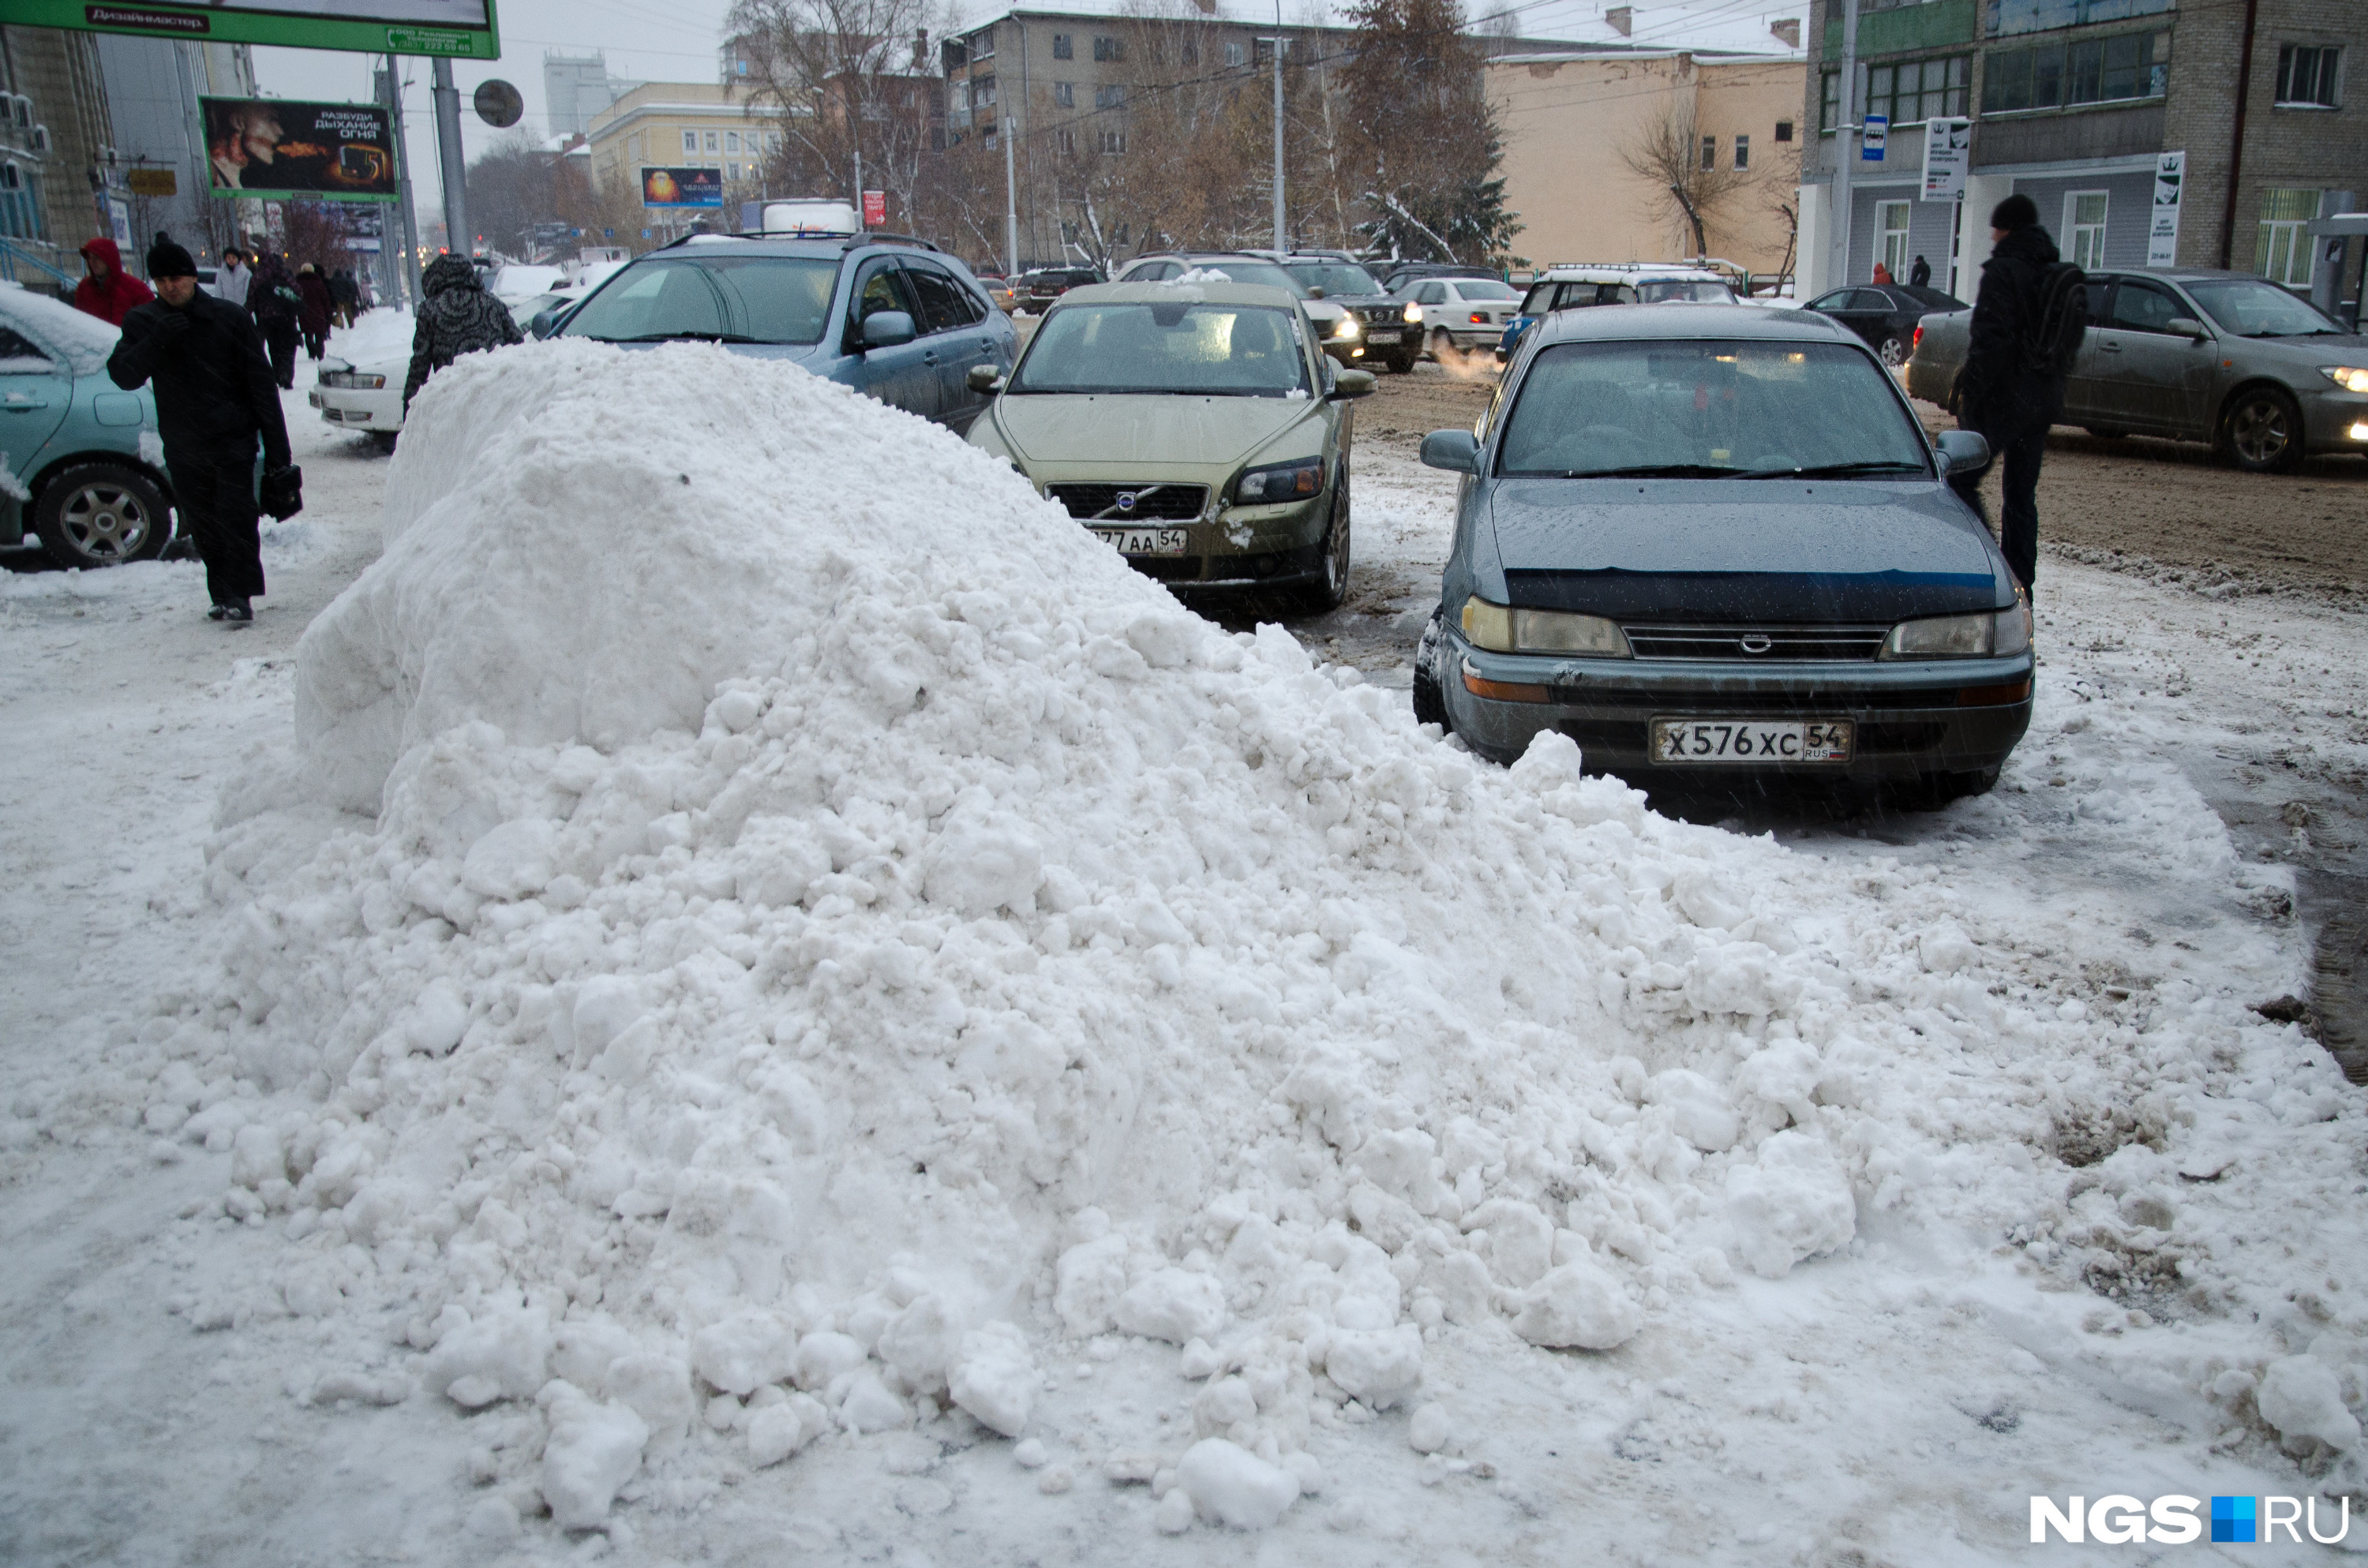 Город сугробов. Сугробы в городе. Сугробы в Ижевске. Город зимнее снял снега. Мозаика снежные сугробы в городском парке.